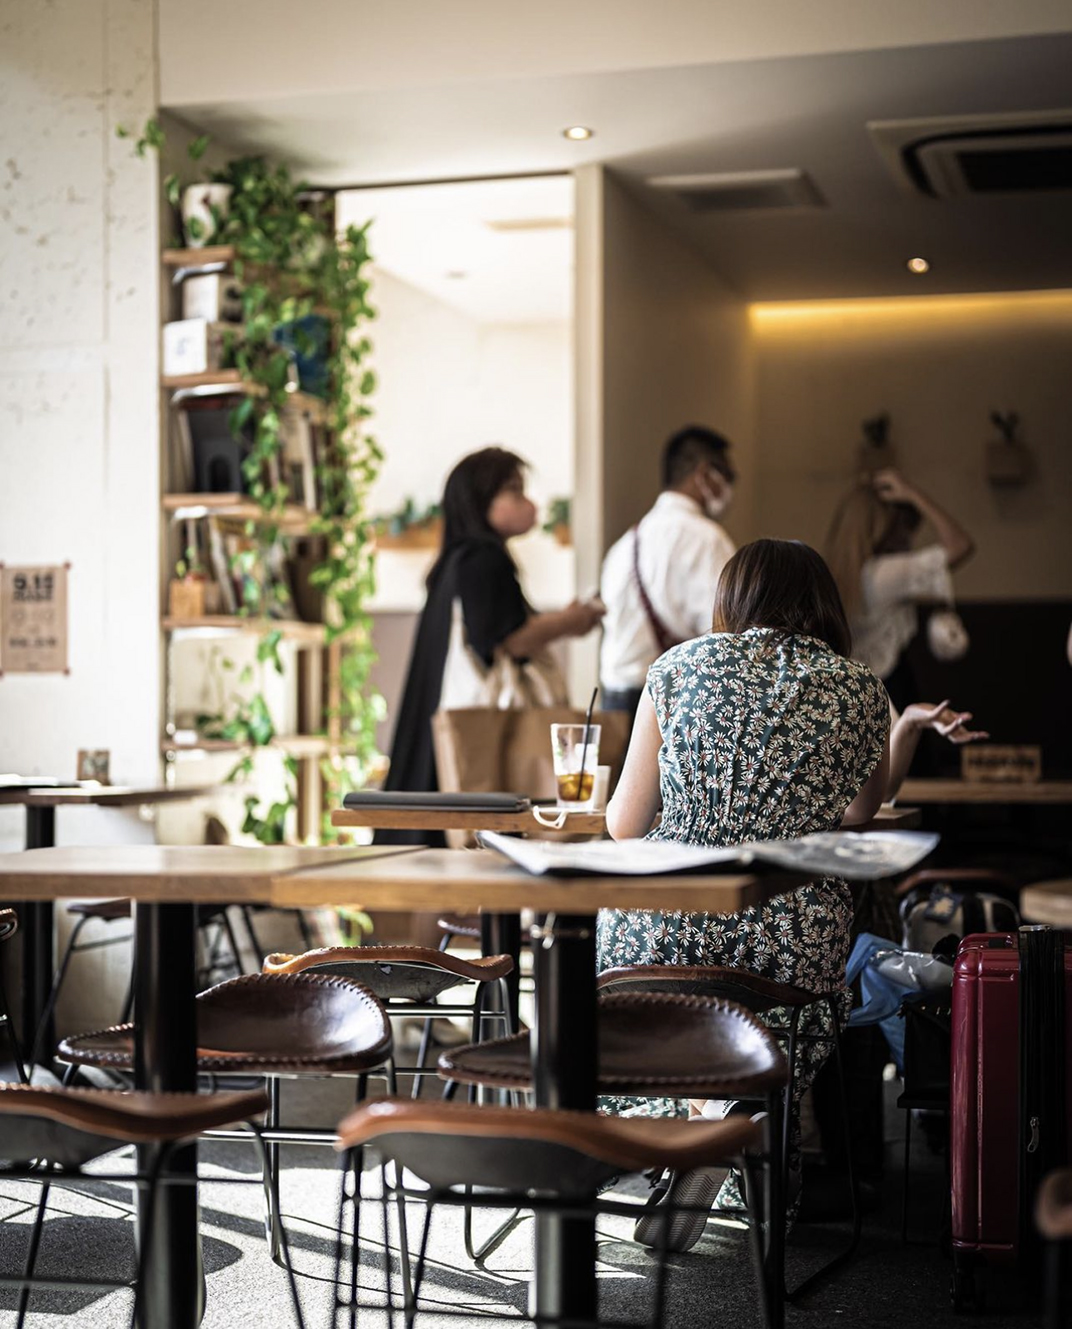 质朴复古咖啡店空间设计 日本 北京 上海 珠海 广州 武汉 杭州 佛山 澳门 logo设计 vi设计 空间设计